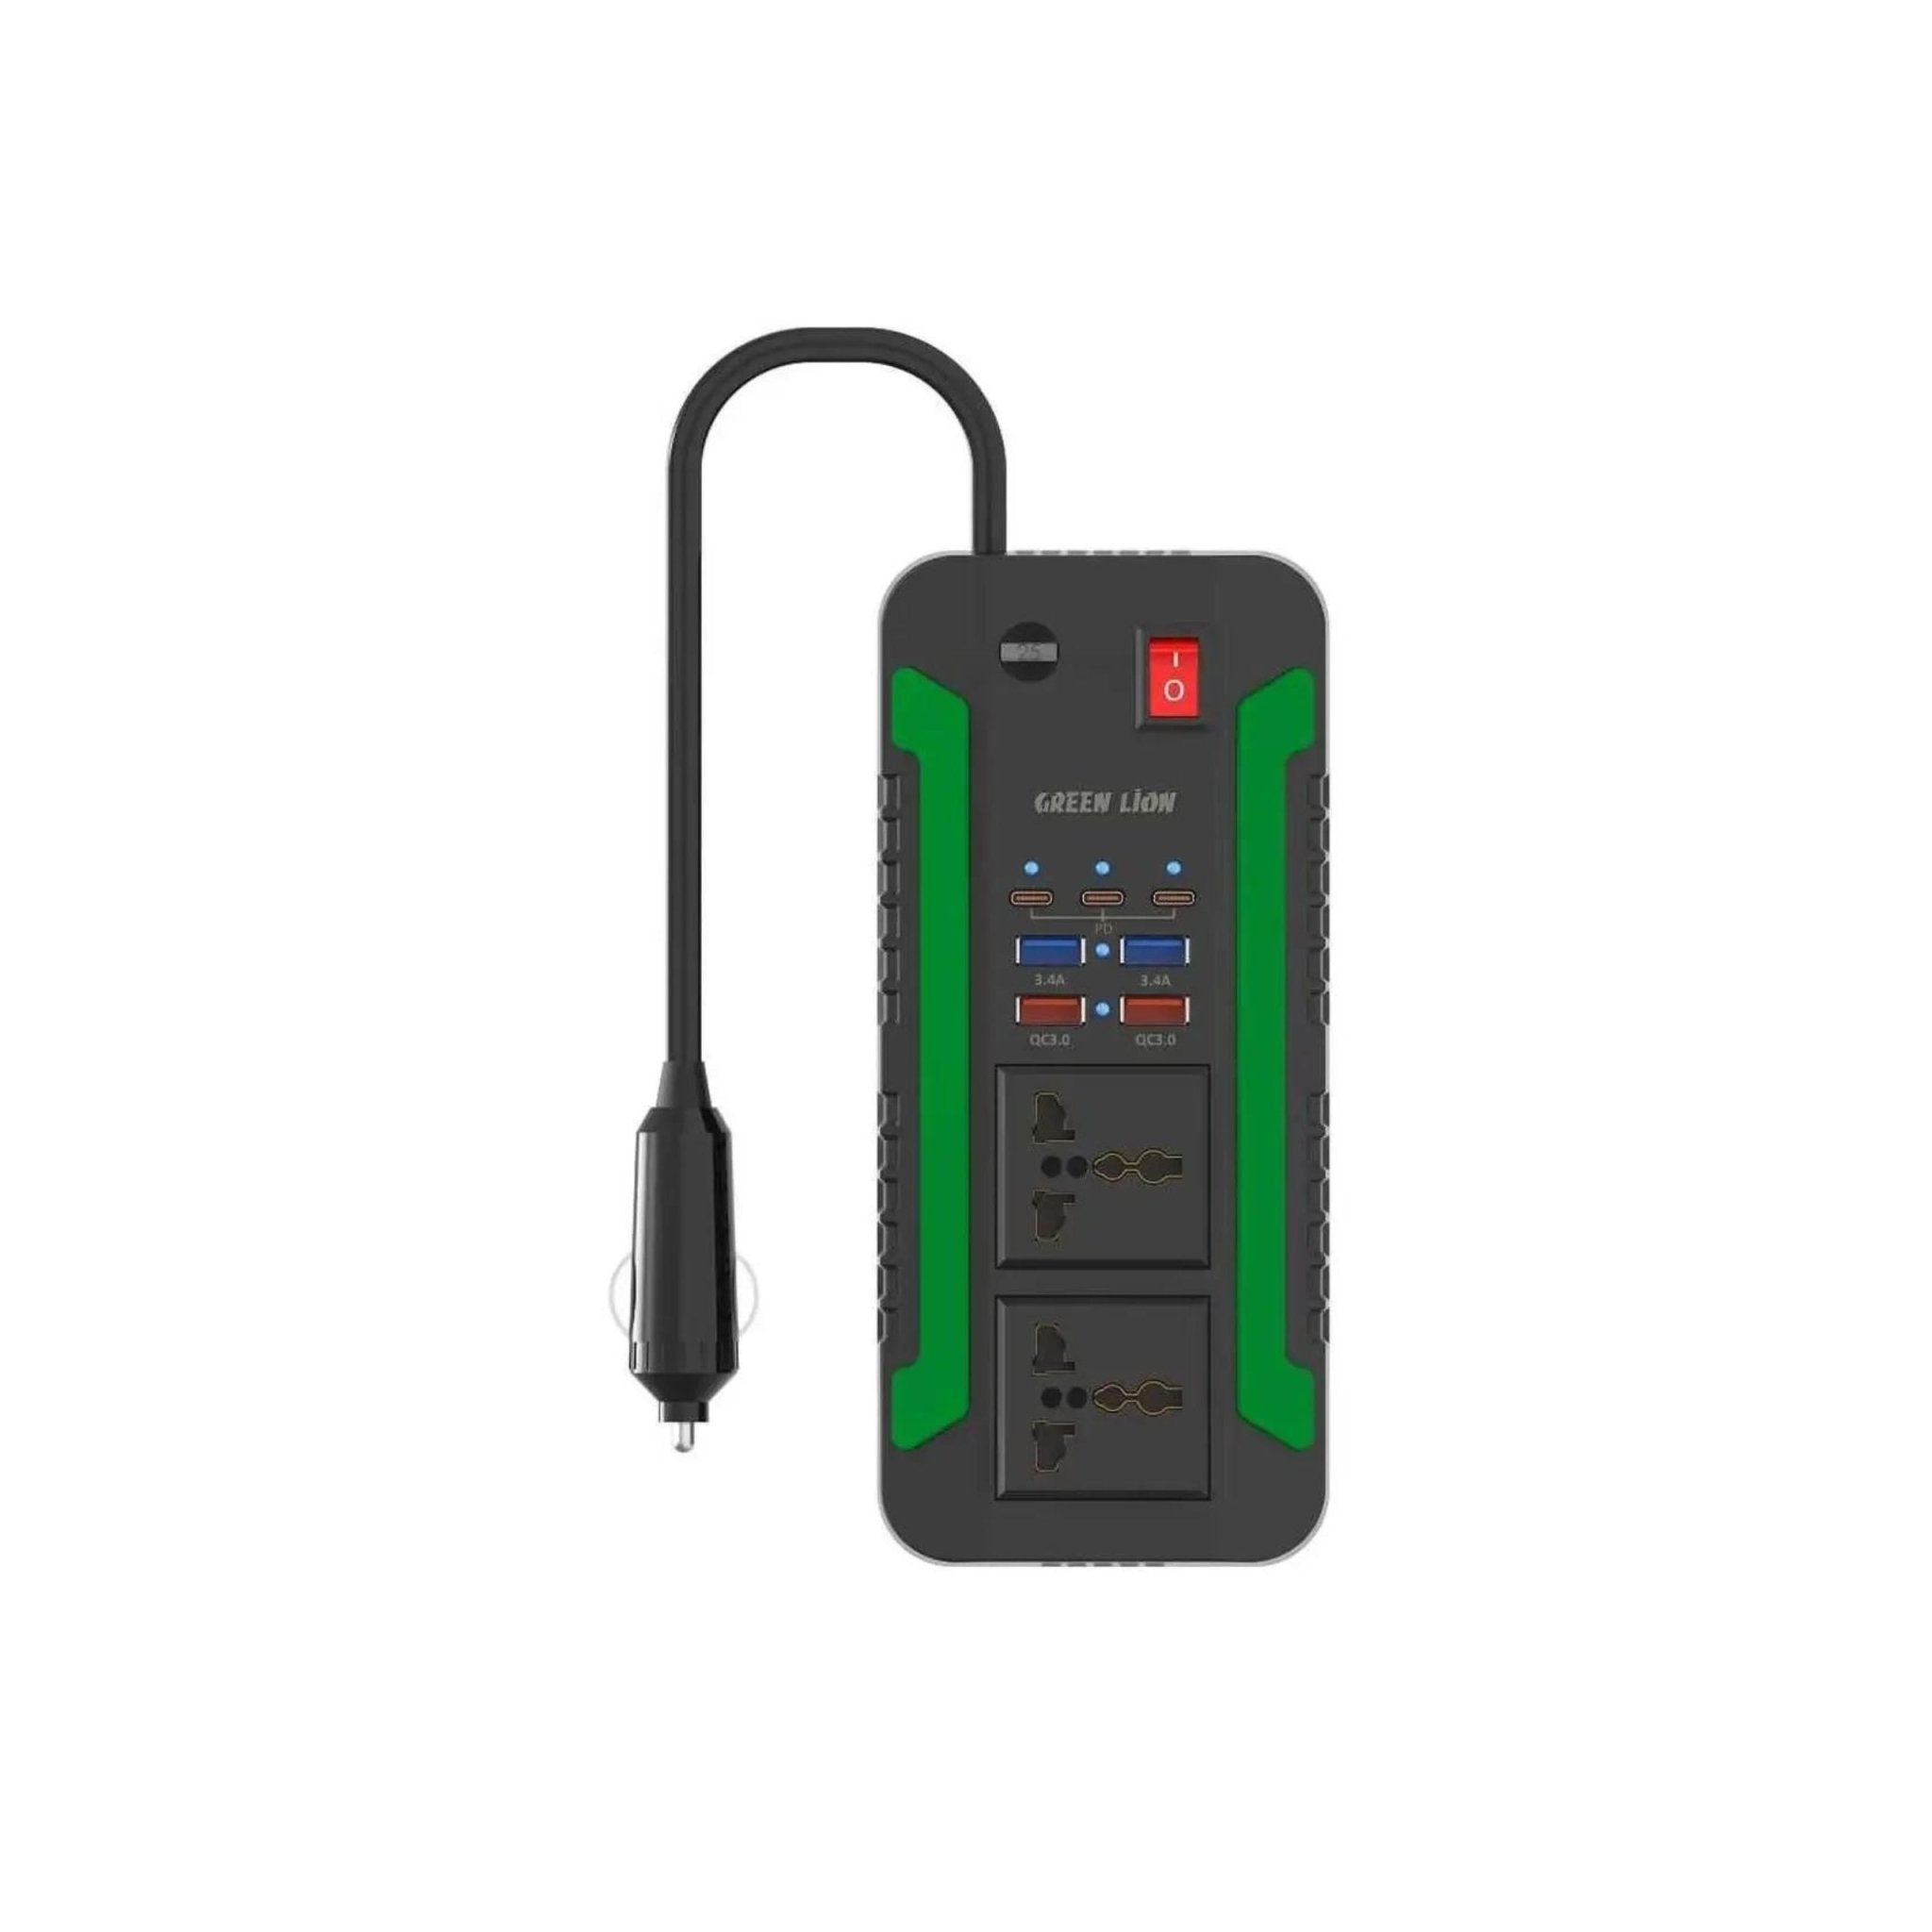 Wireless Music on the Go: Green Lion Car FM Transmitter Kit for Car